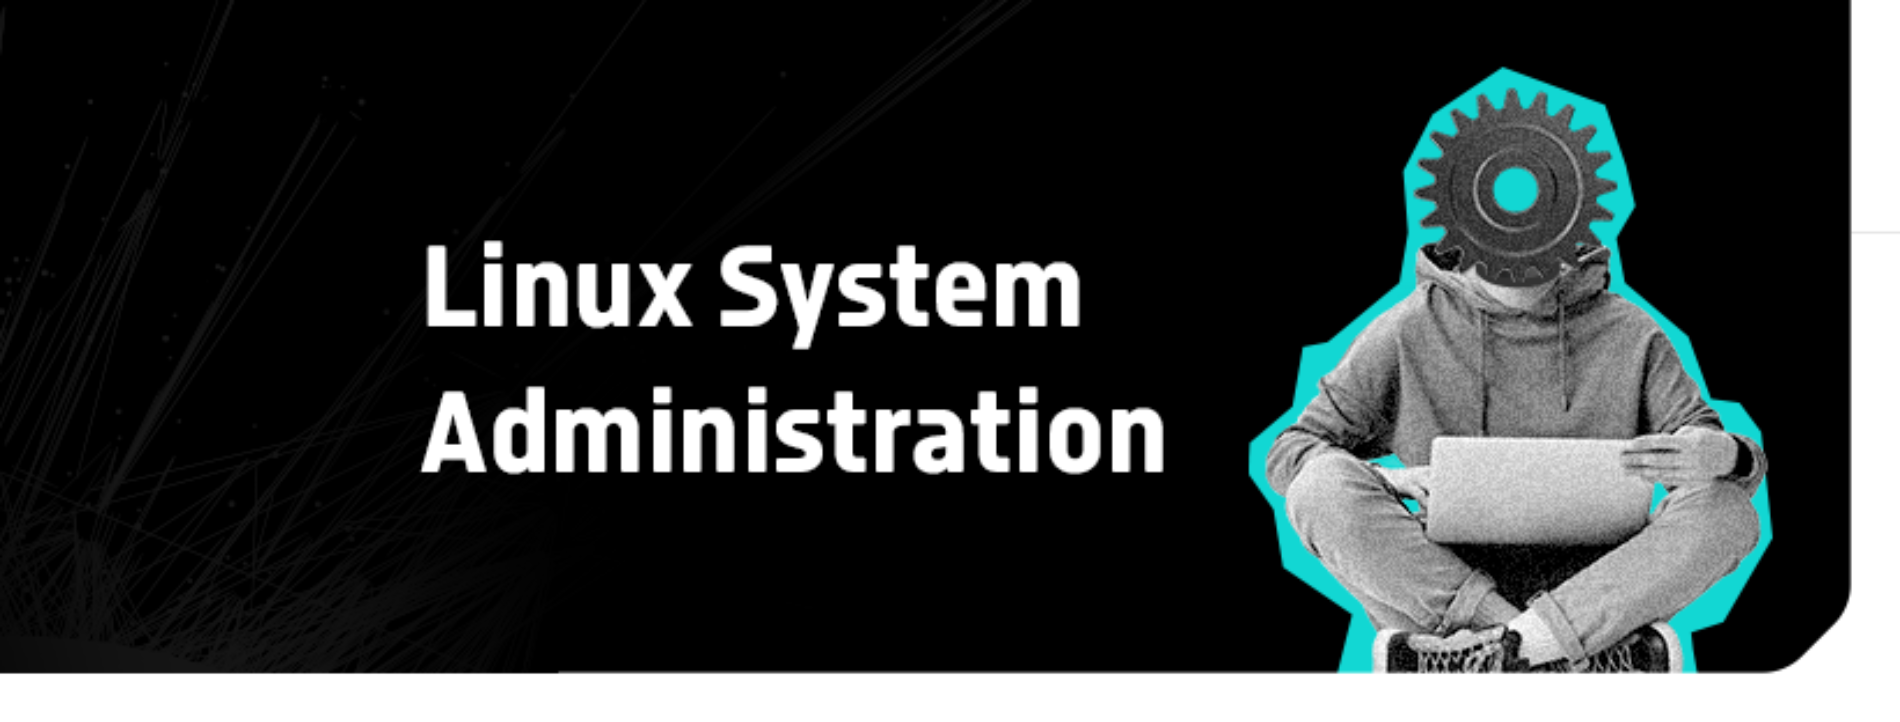 Domine o Linux: Torne-se um Administrador de Sistemas Linux